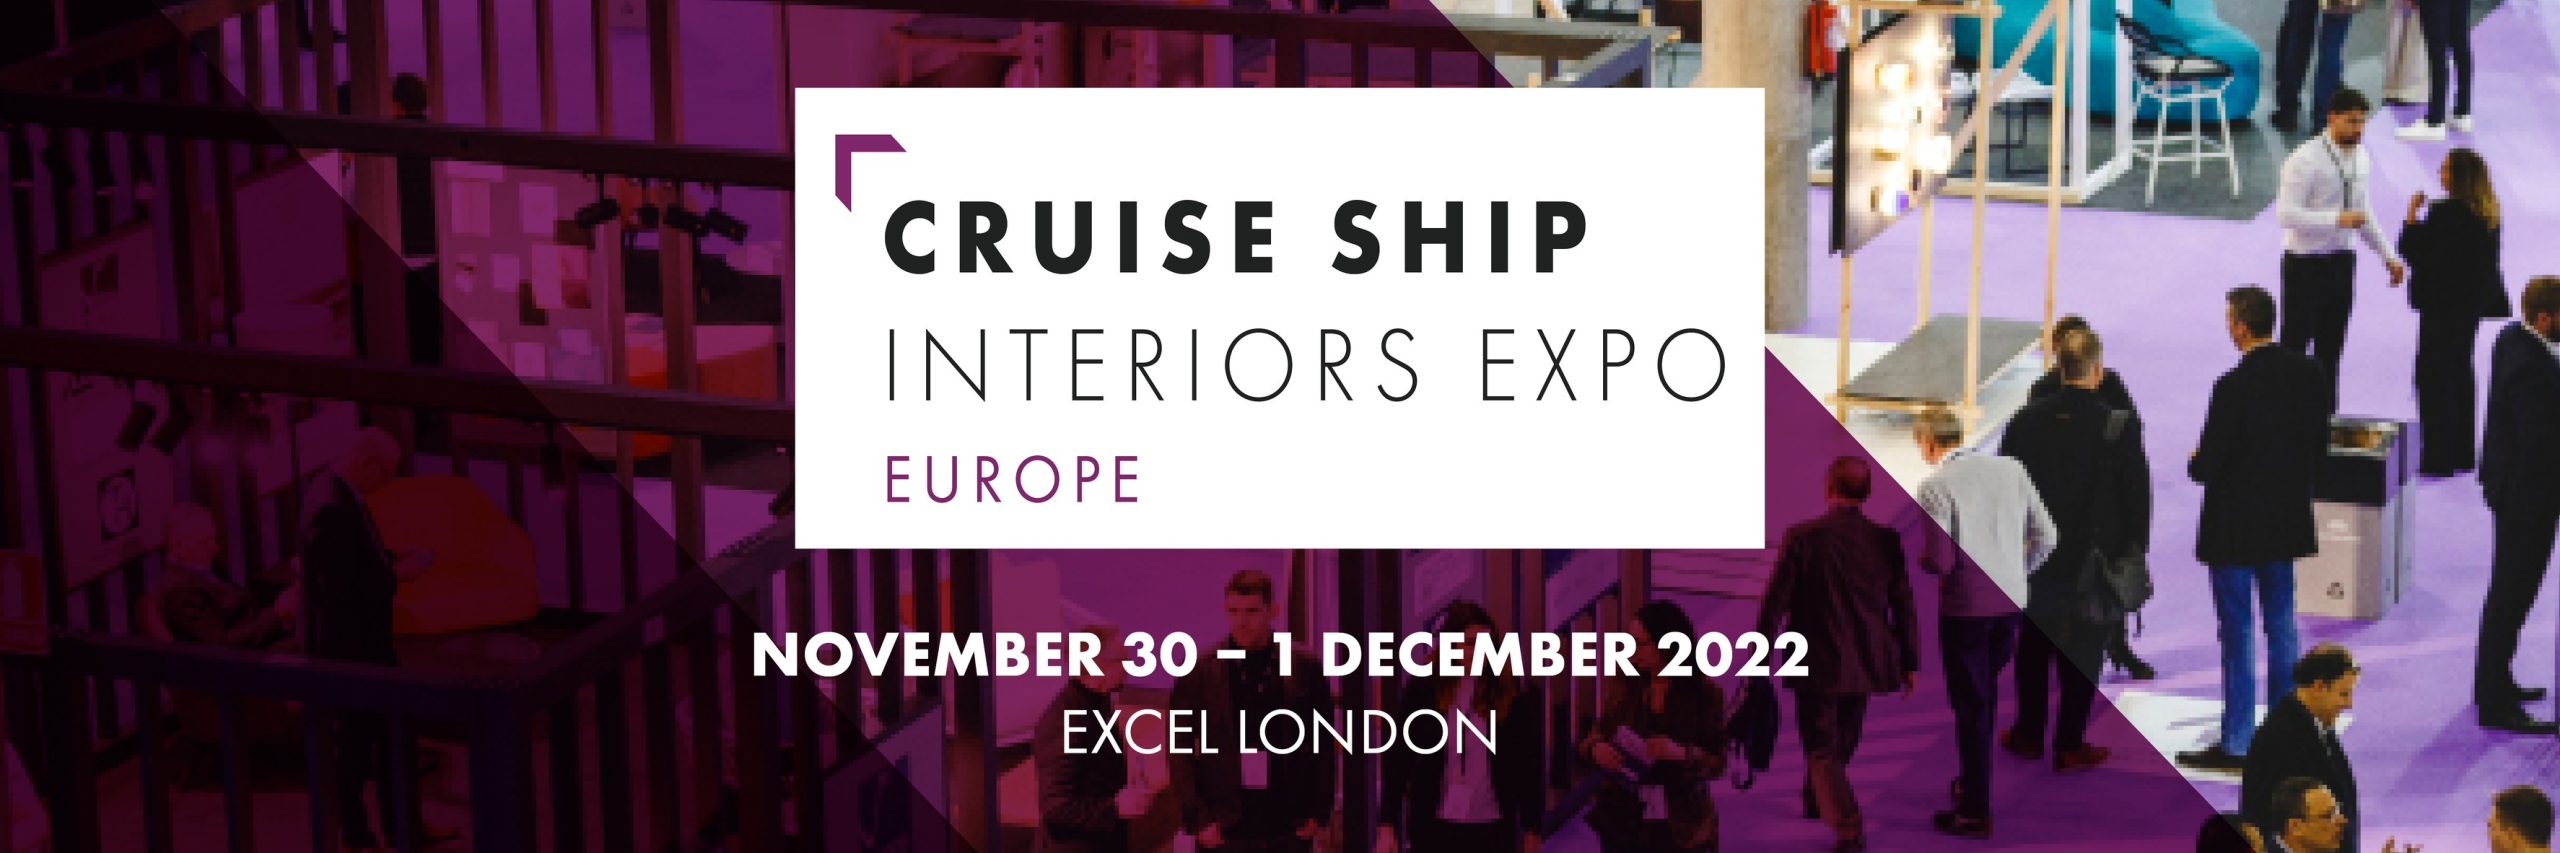 cruise ship interiors expo london 2022